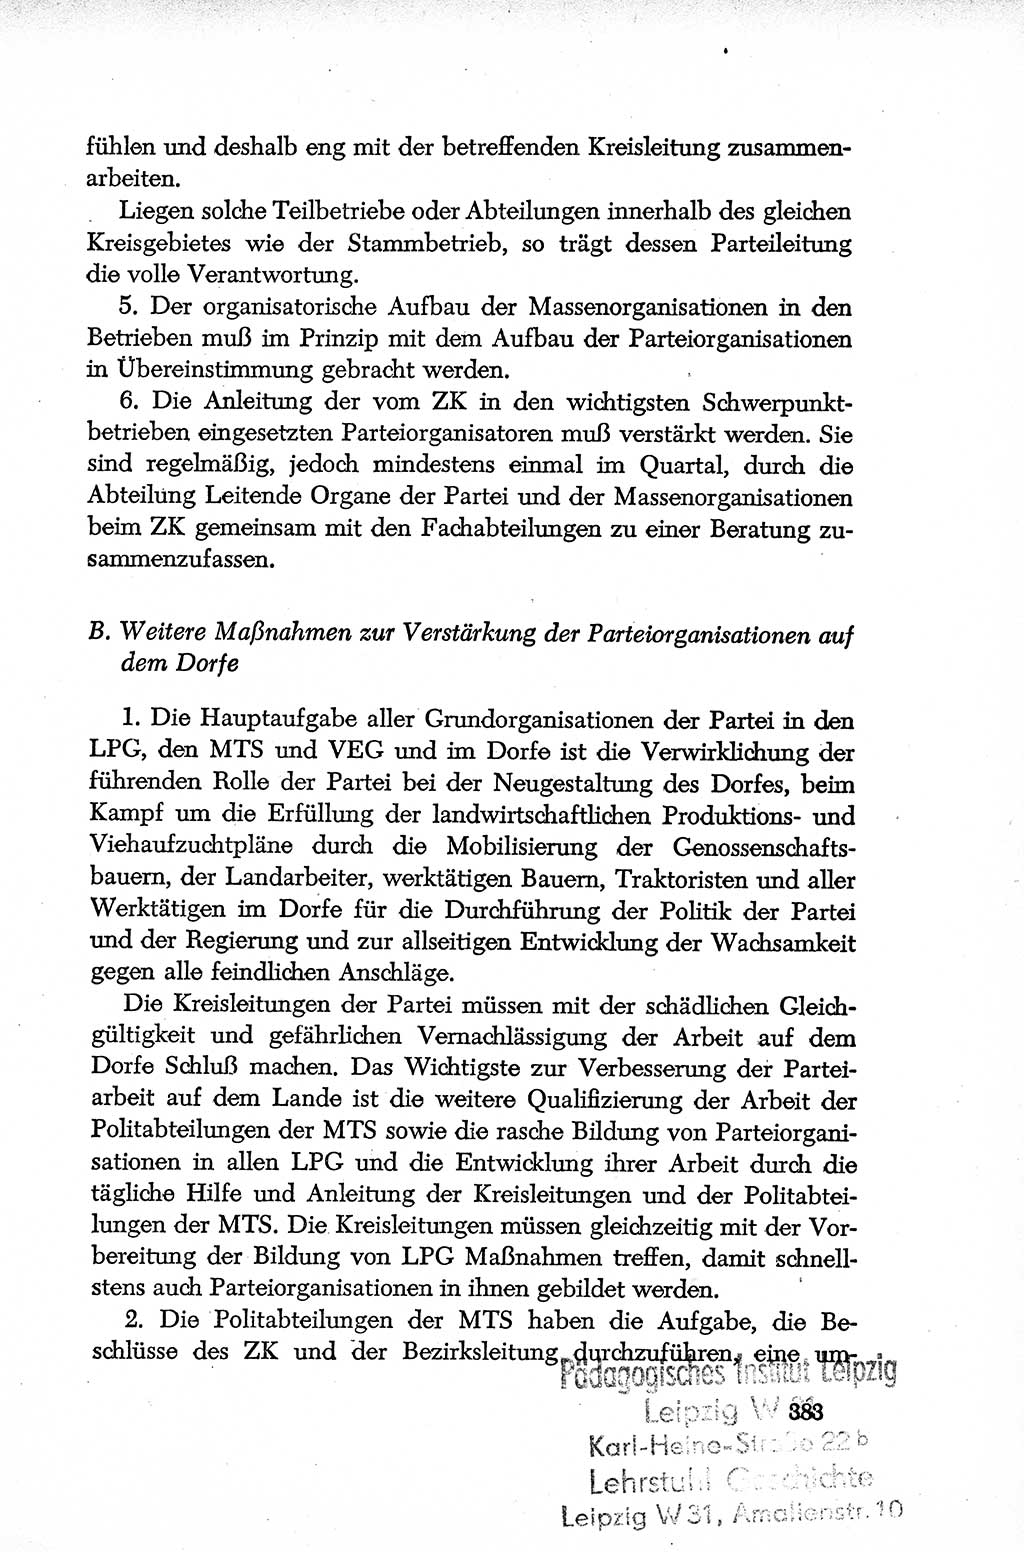 Dokumente der Sozialistischen Einheitspartei Deutschlands (SED) [Deutsche Demokratische Republik (DDR)] 1952-1953, Seite 383 (Dok. SED DDR 1952-1953, S. 383)